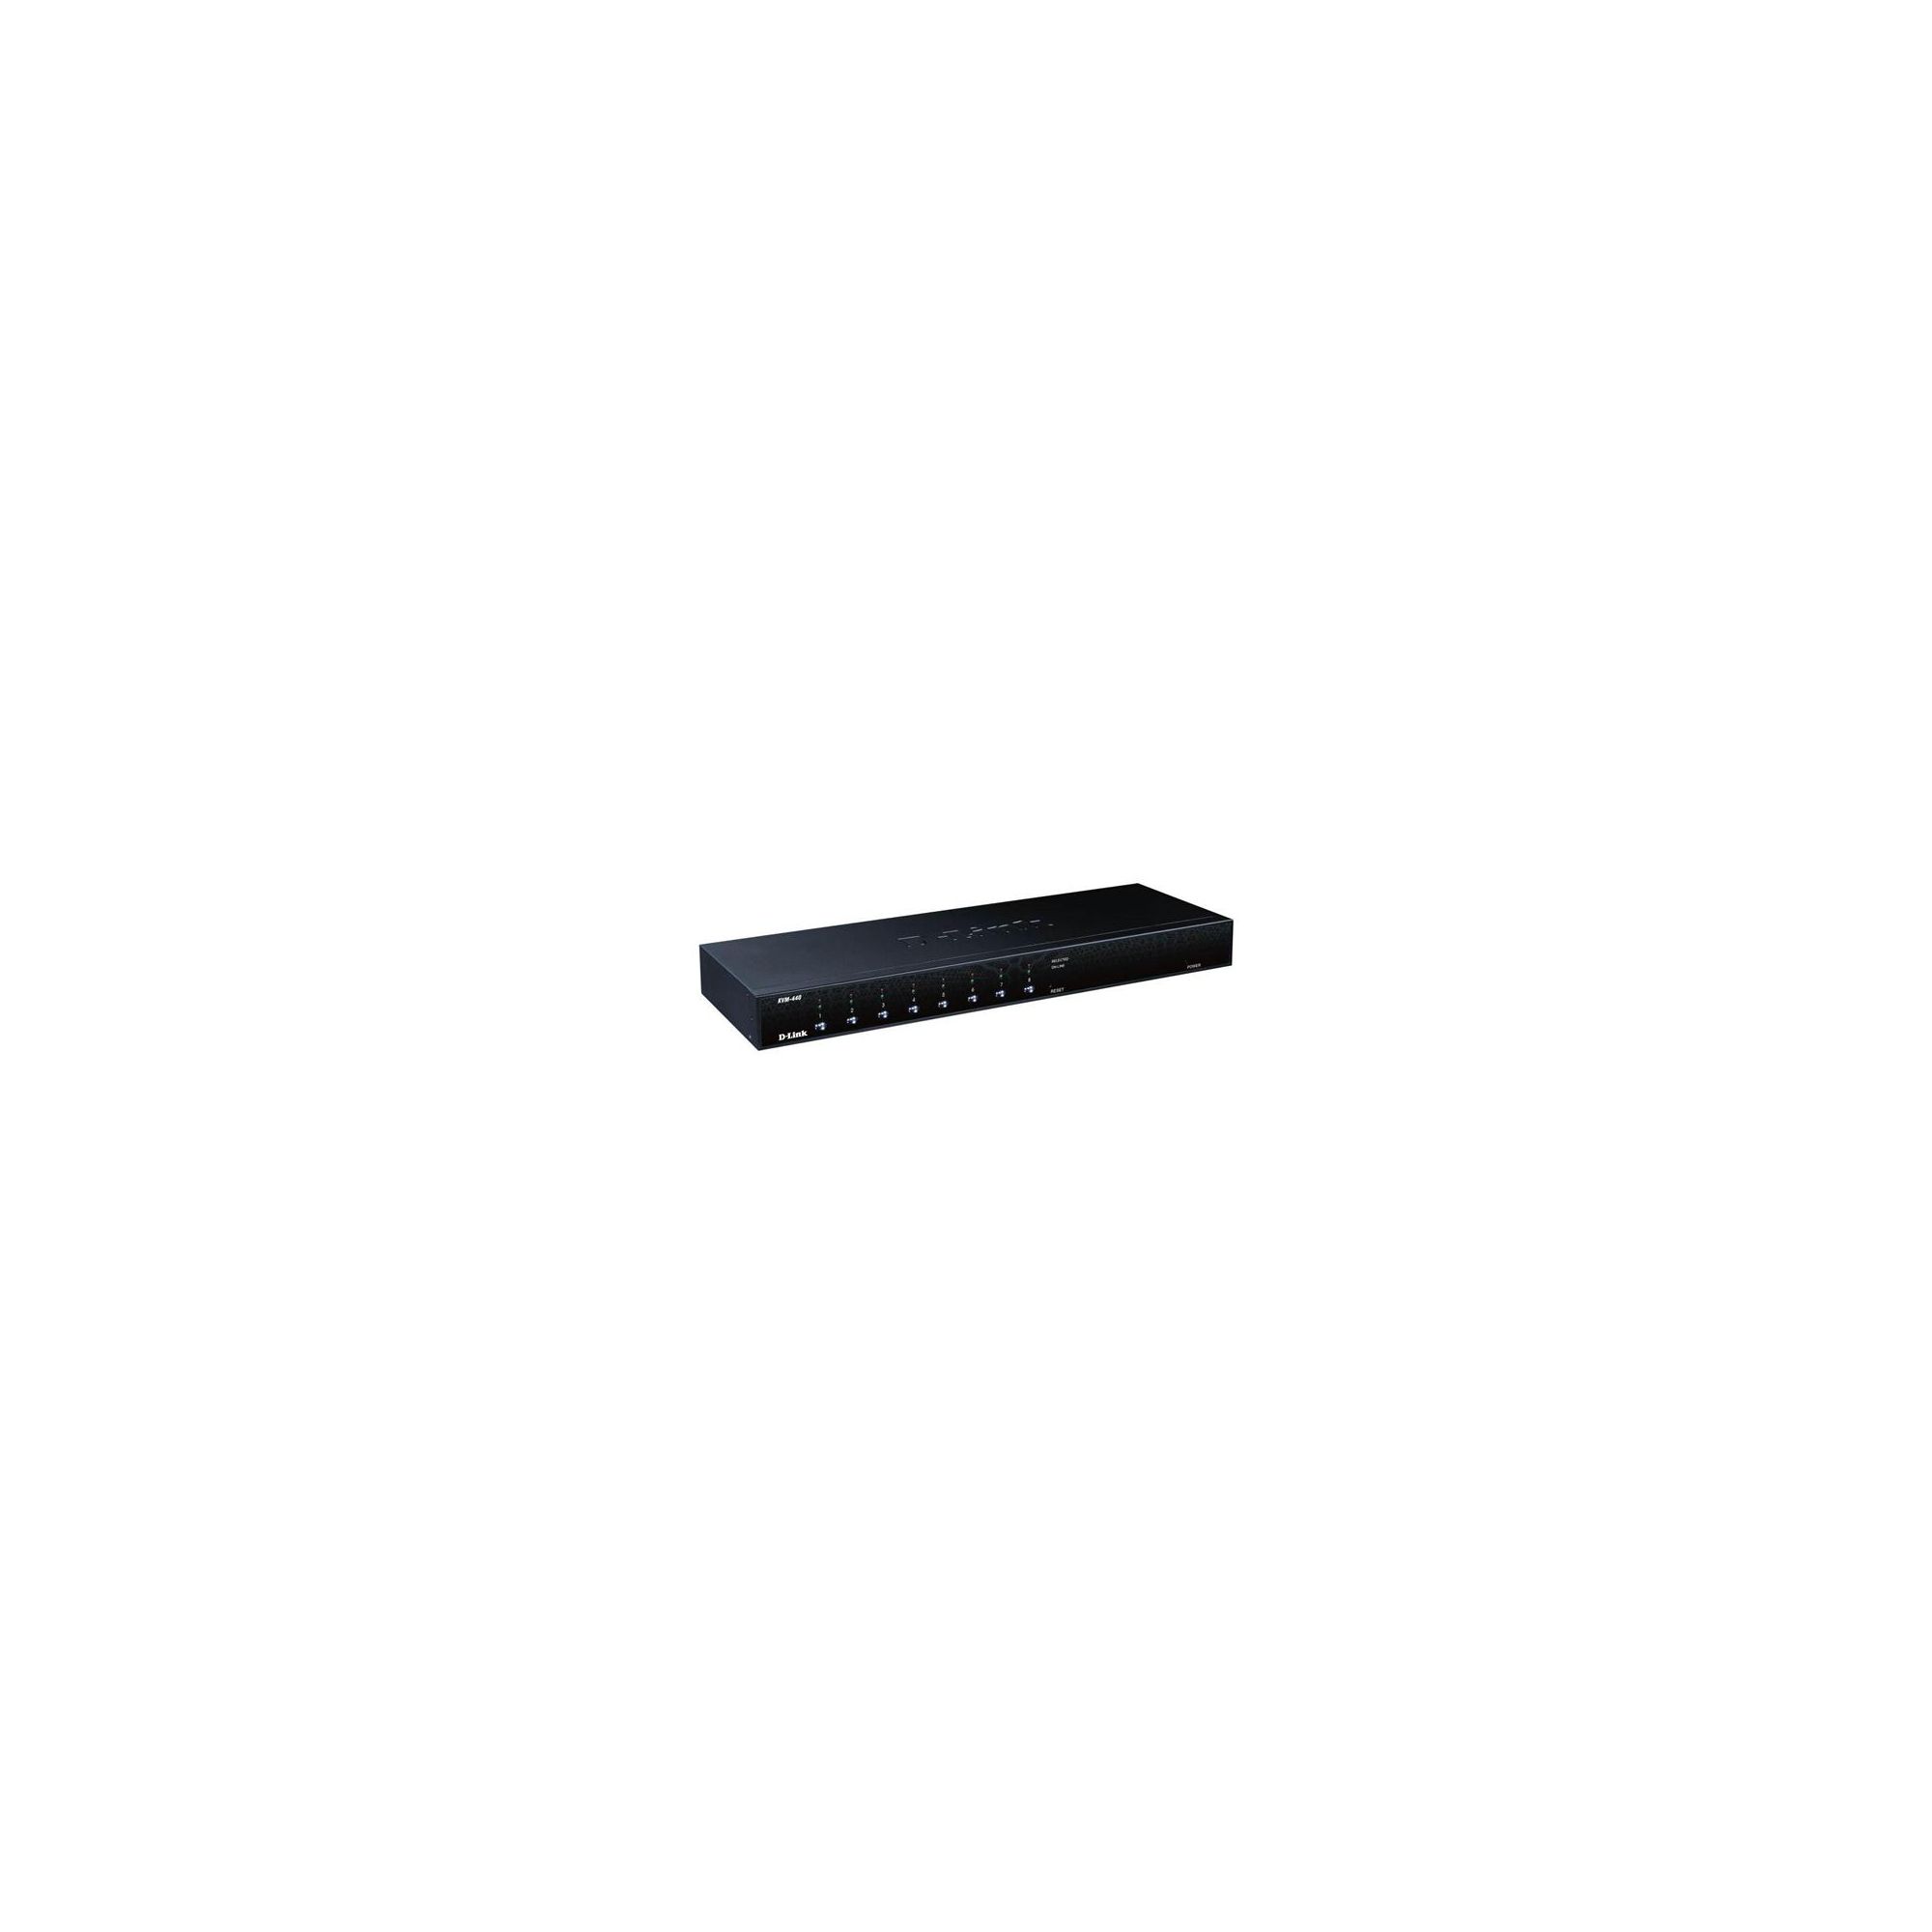 D-Link DKVM-440 8-Port PS2/USB Stackable KVM Switch at Tesco Direct